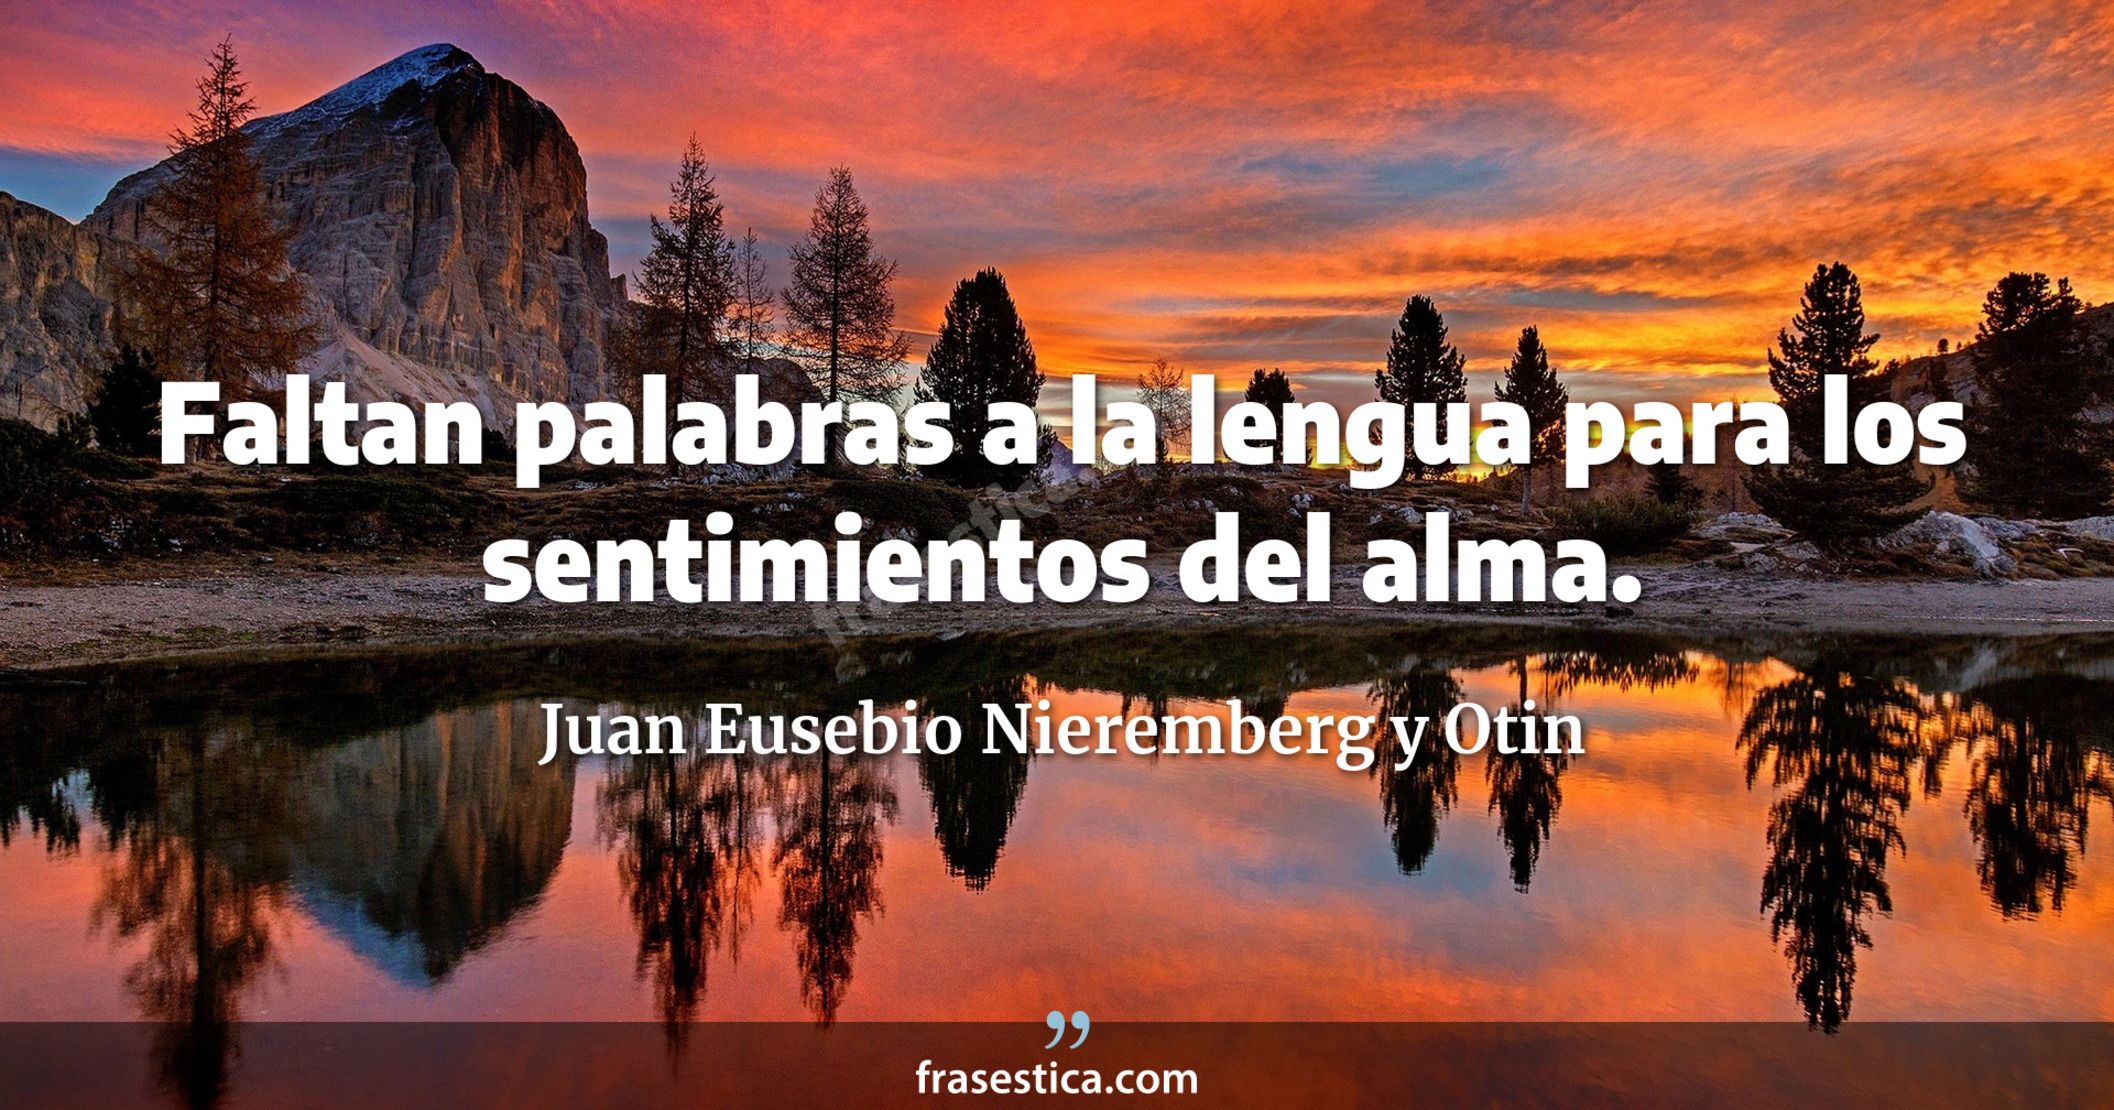 Faltan palabras a la lengua para los sentimientos del alma. - Juan Eusebio Nieremberg y Otin